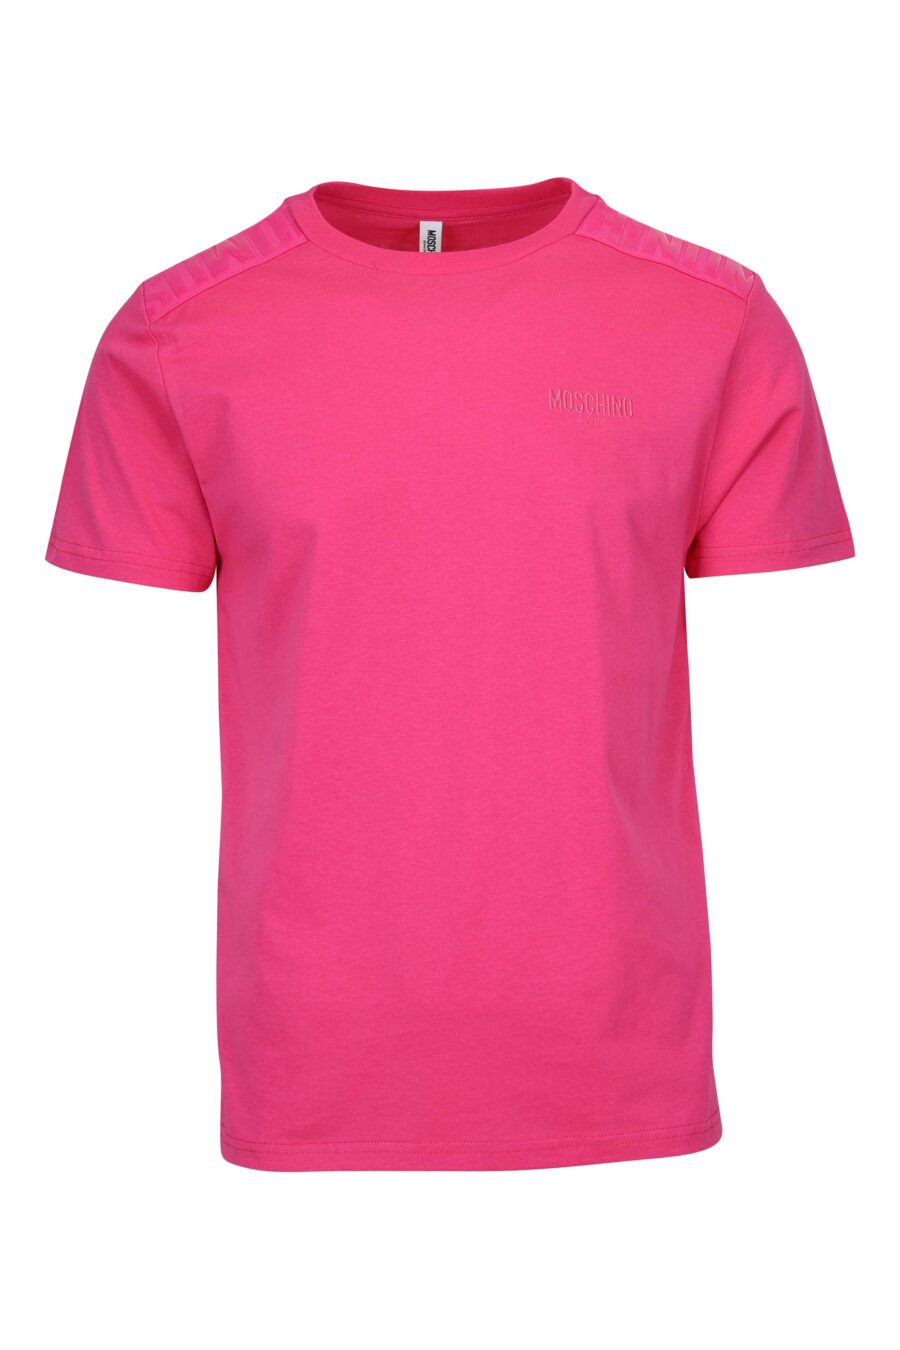 Fuchsiafarbenes T-Shirt mit monochromem Gummilogo auf den Schultern - 667113671888